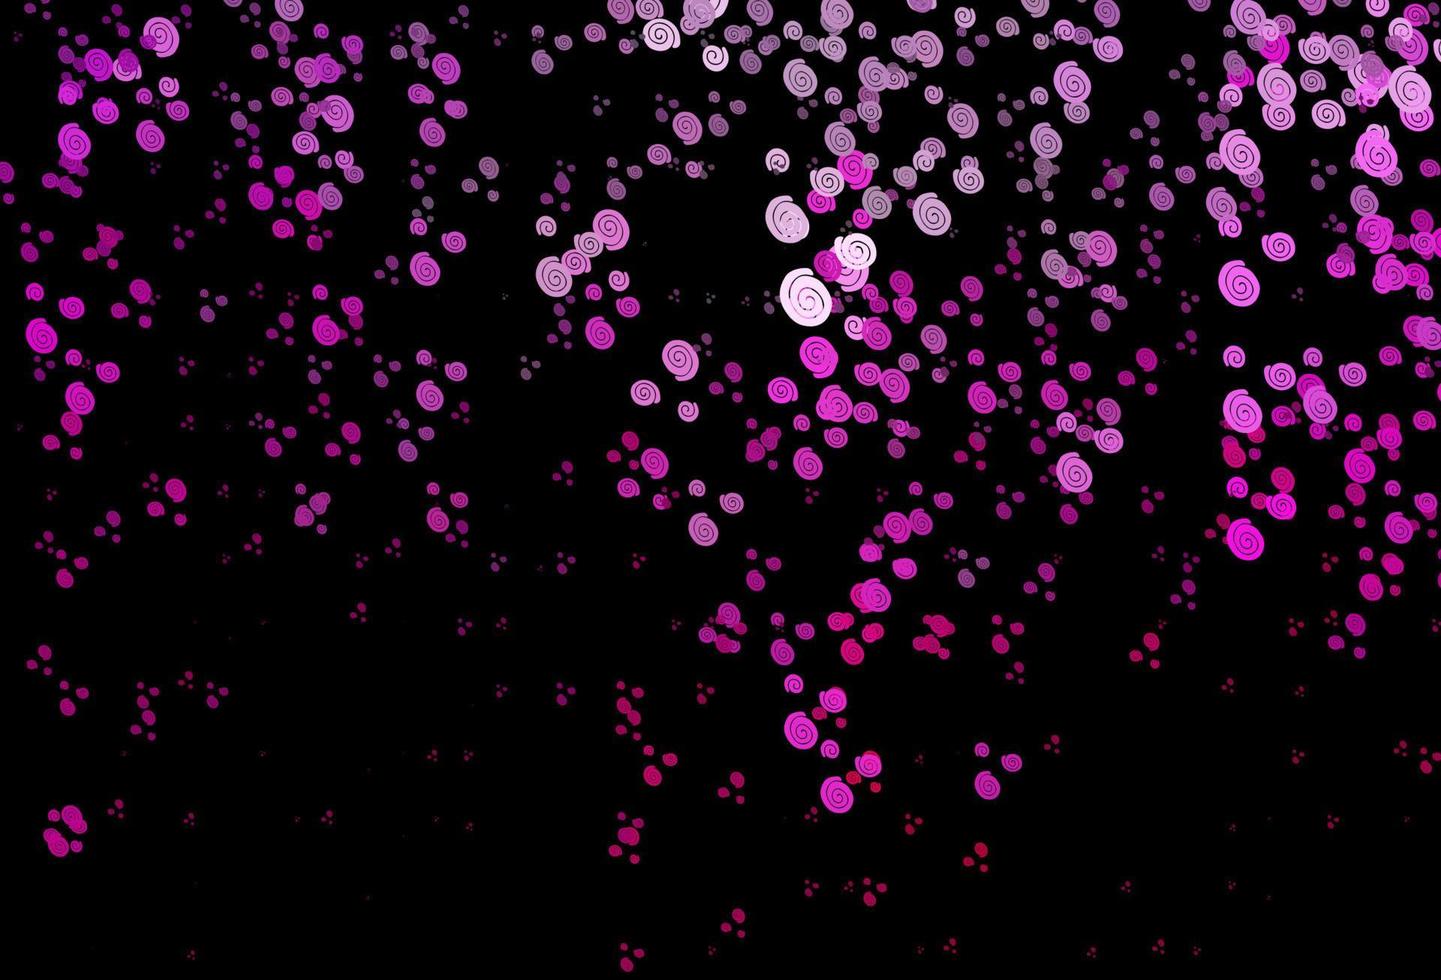 sfondo vettoriale rosa scuro con forme a bolle.